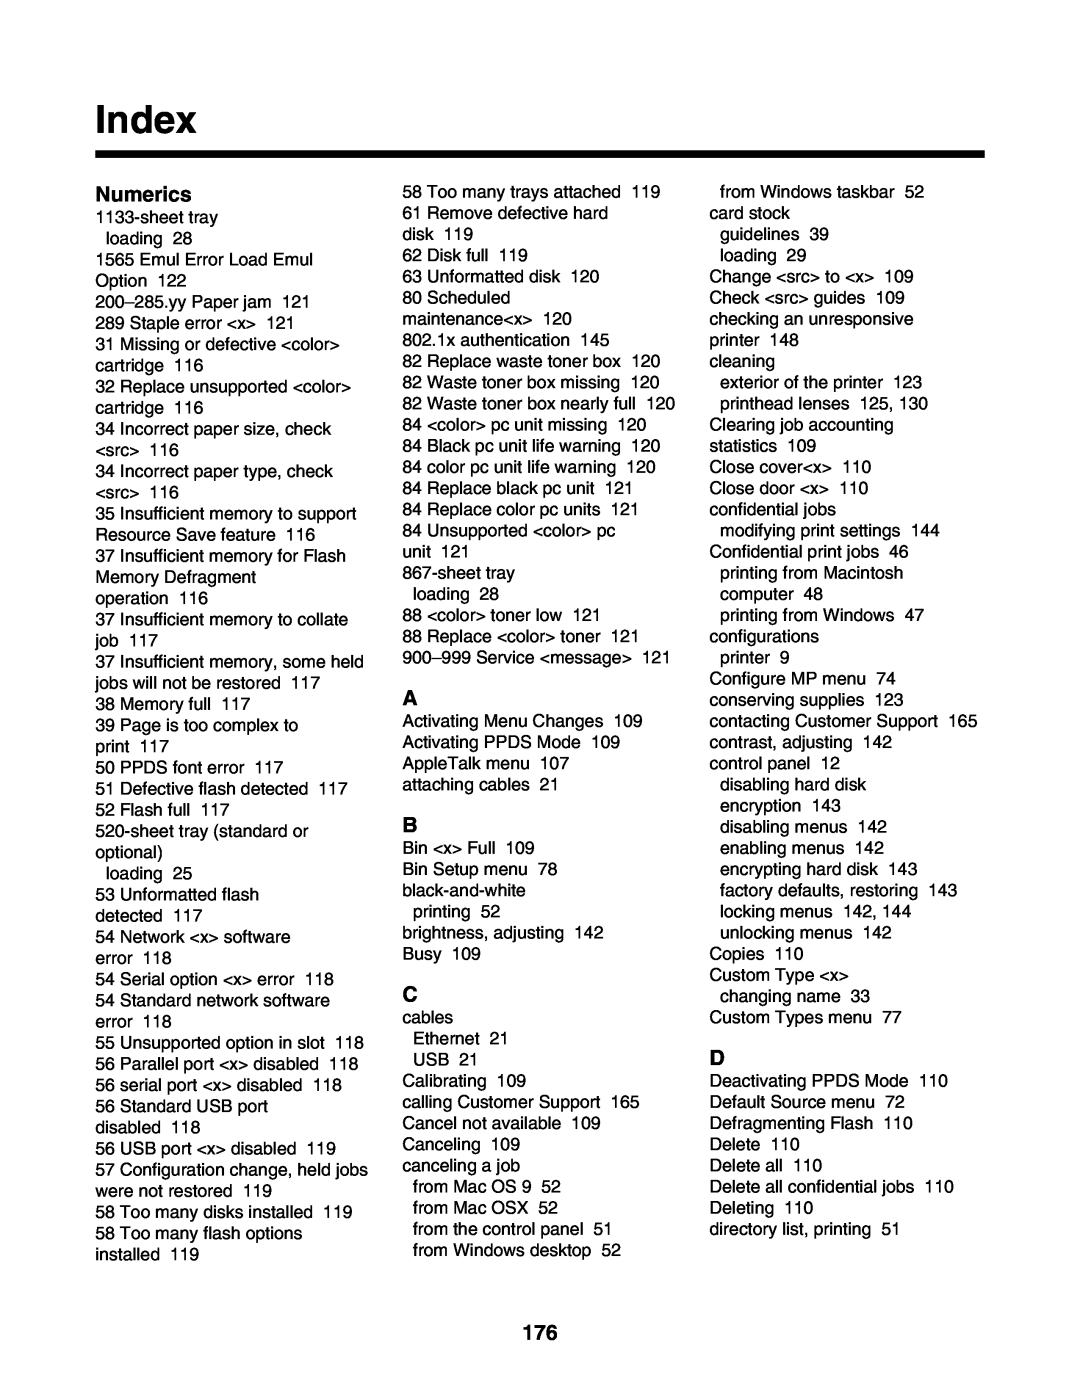 Lexmark C935 manual Index, Numerics 